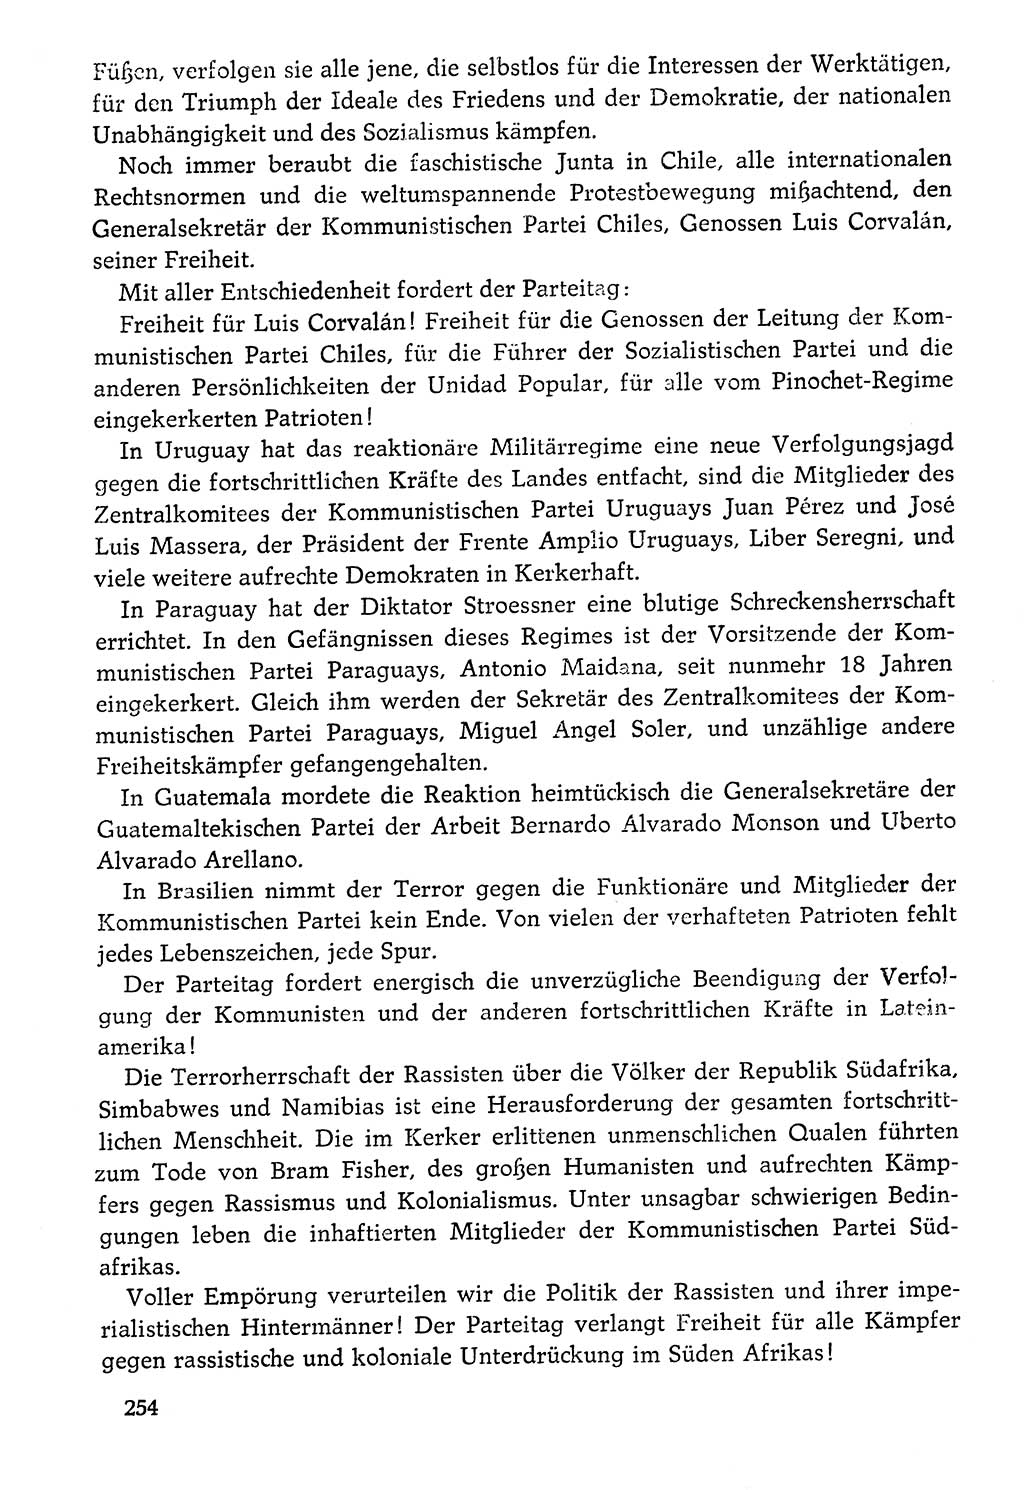 Dokumente der Sozialistischen Einheitspartei Deutschlands (SED) [Deutsche Demokratische Republik (DDR)] 1976-1977, Seite 254 (Dok. SED DDR 1976-1977, S. 254)